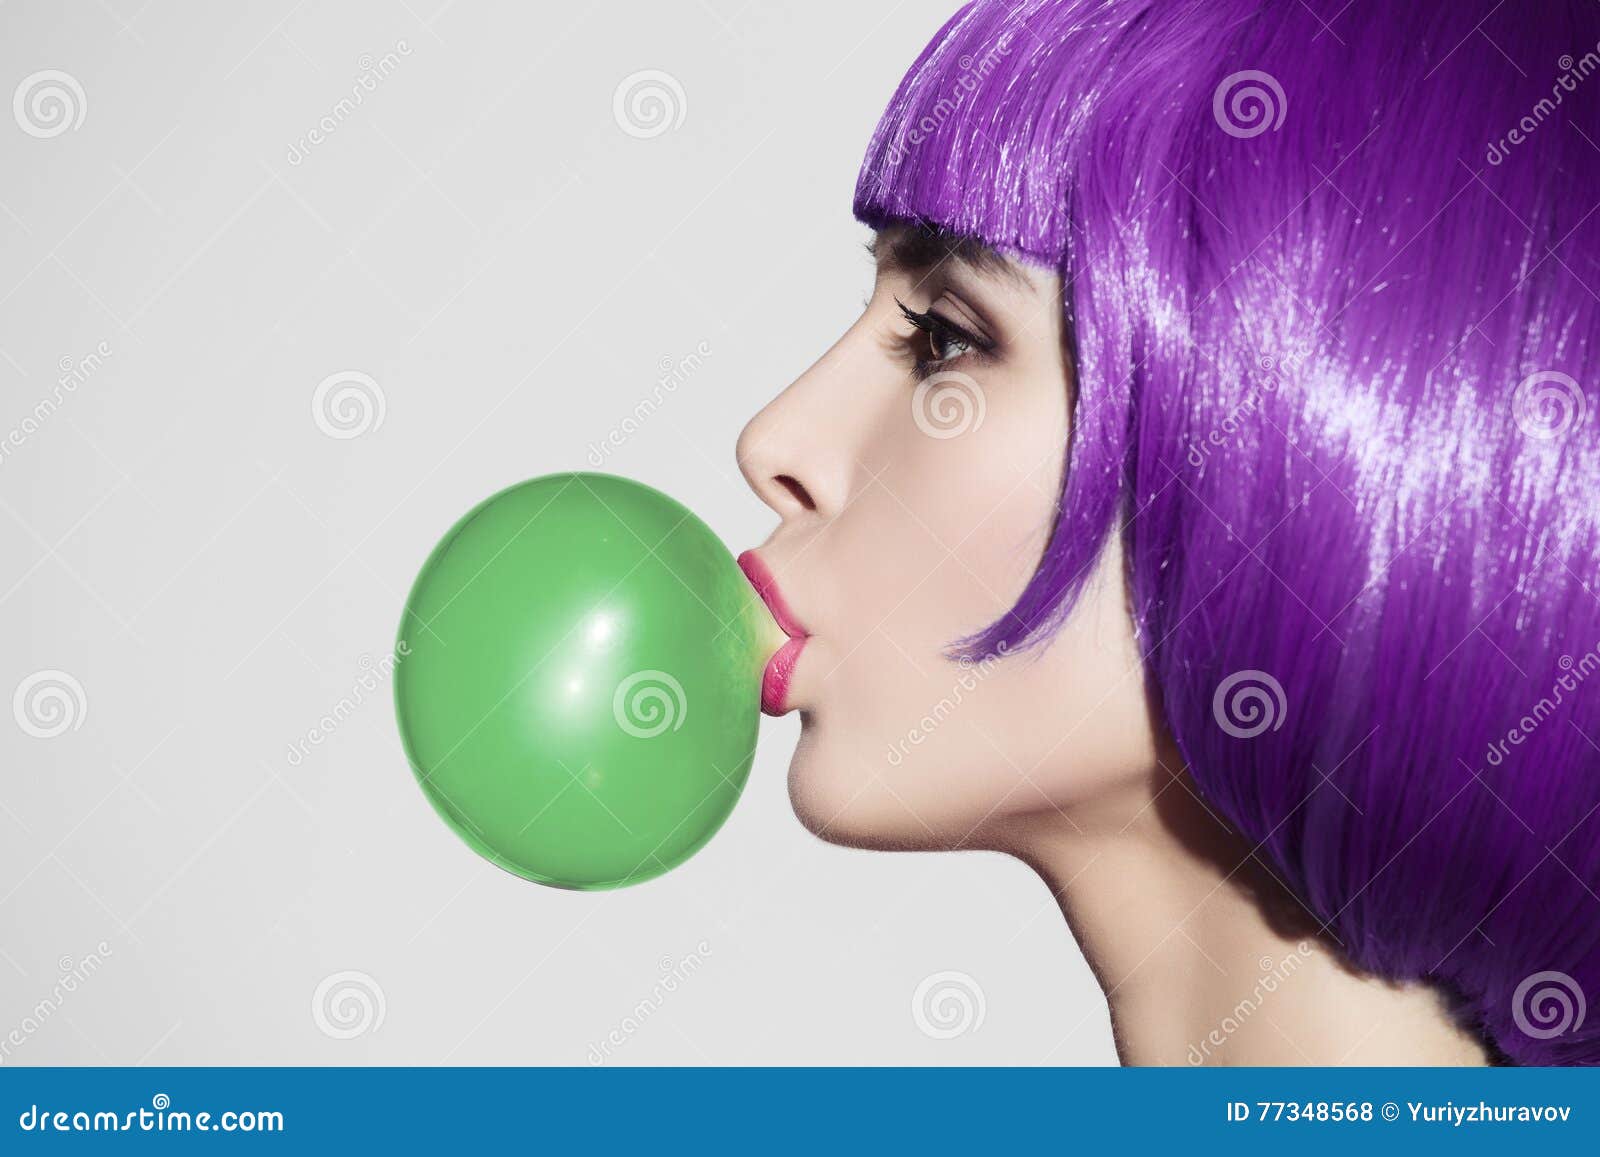 pop art woman portrait wearing purple wig. blow a green bubble